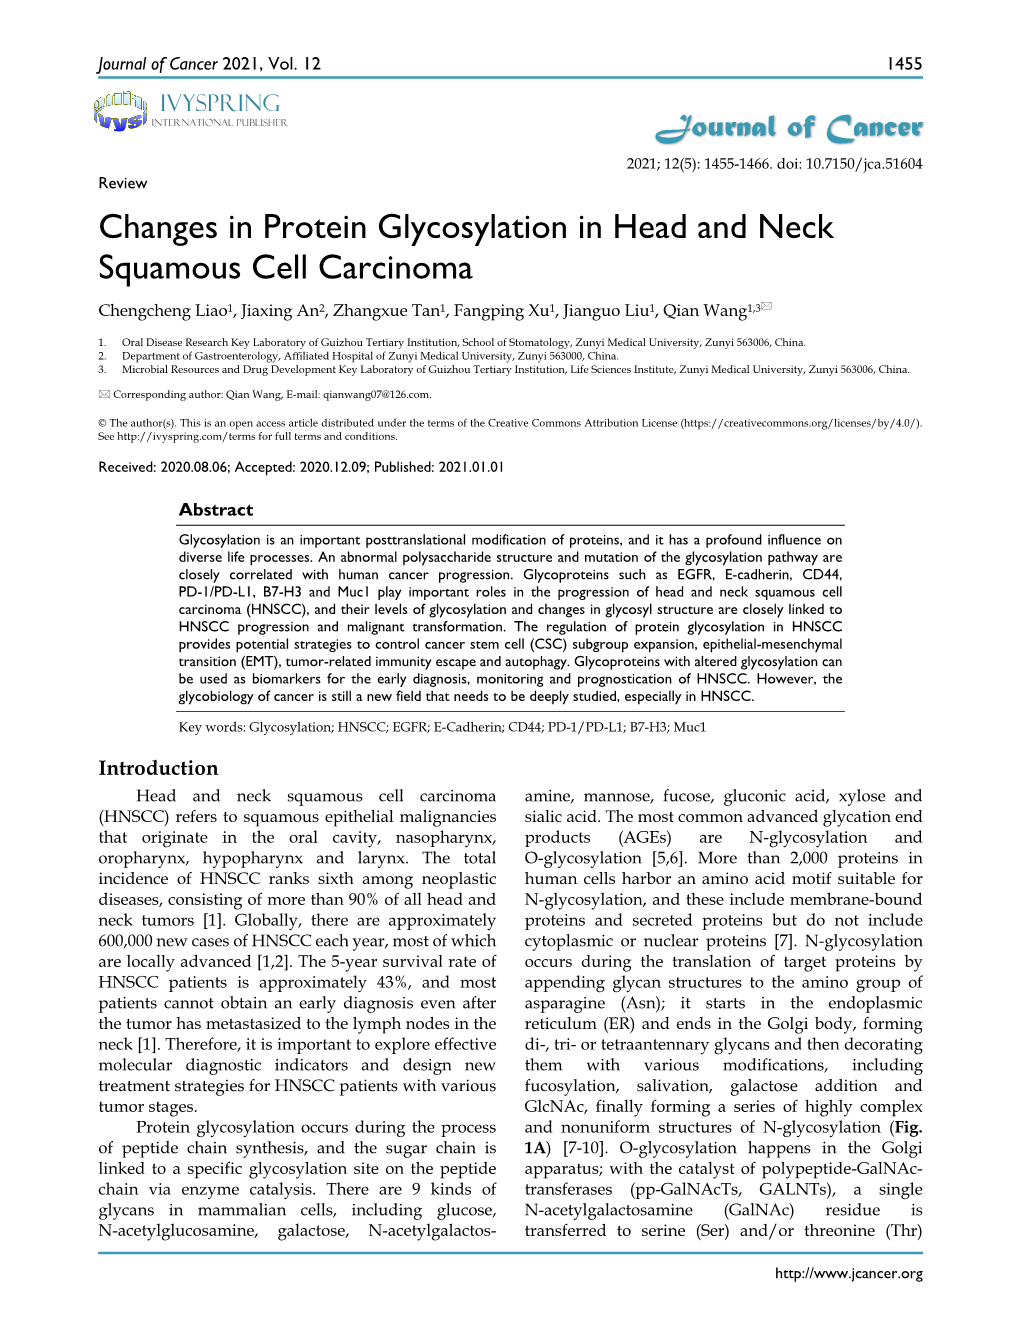 Changes in Protein Glycosylation in Head and Neck Squamous Cell Carcinoma Chengcheng Liao1, Jiaxing An2, Zhangxue Tan1, Fangping Xu1, Jianguo Liu1, Qian Wang1,3